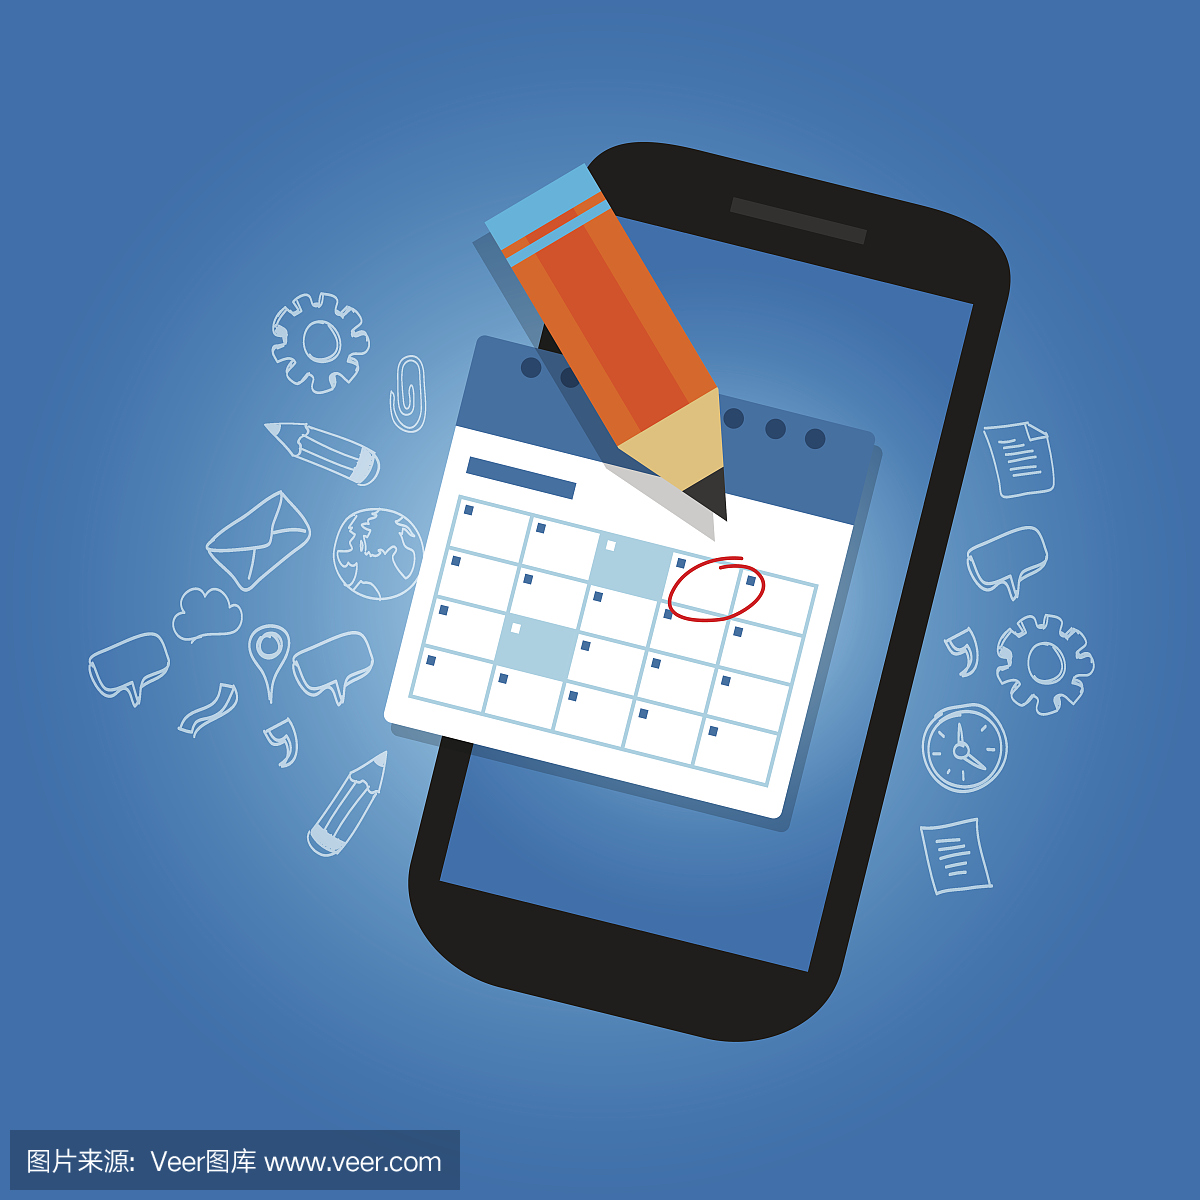 在移动智能手机设备上标记日程表重要日期提醒